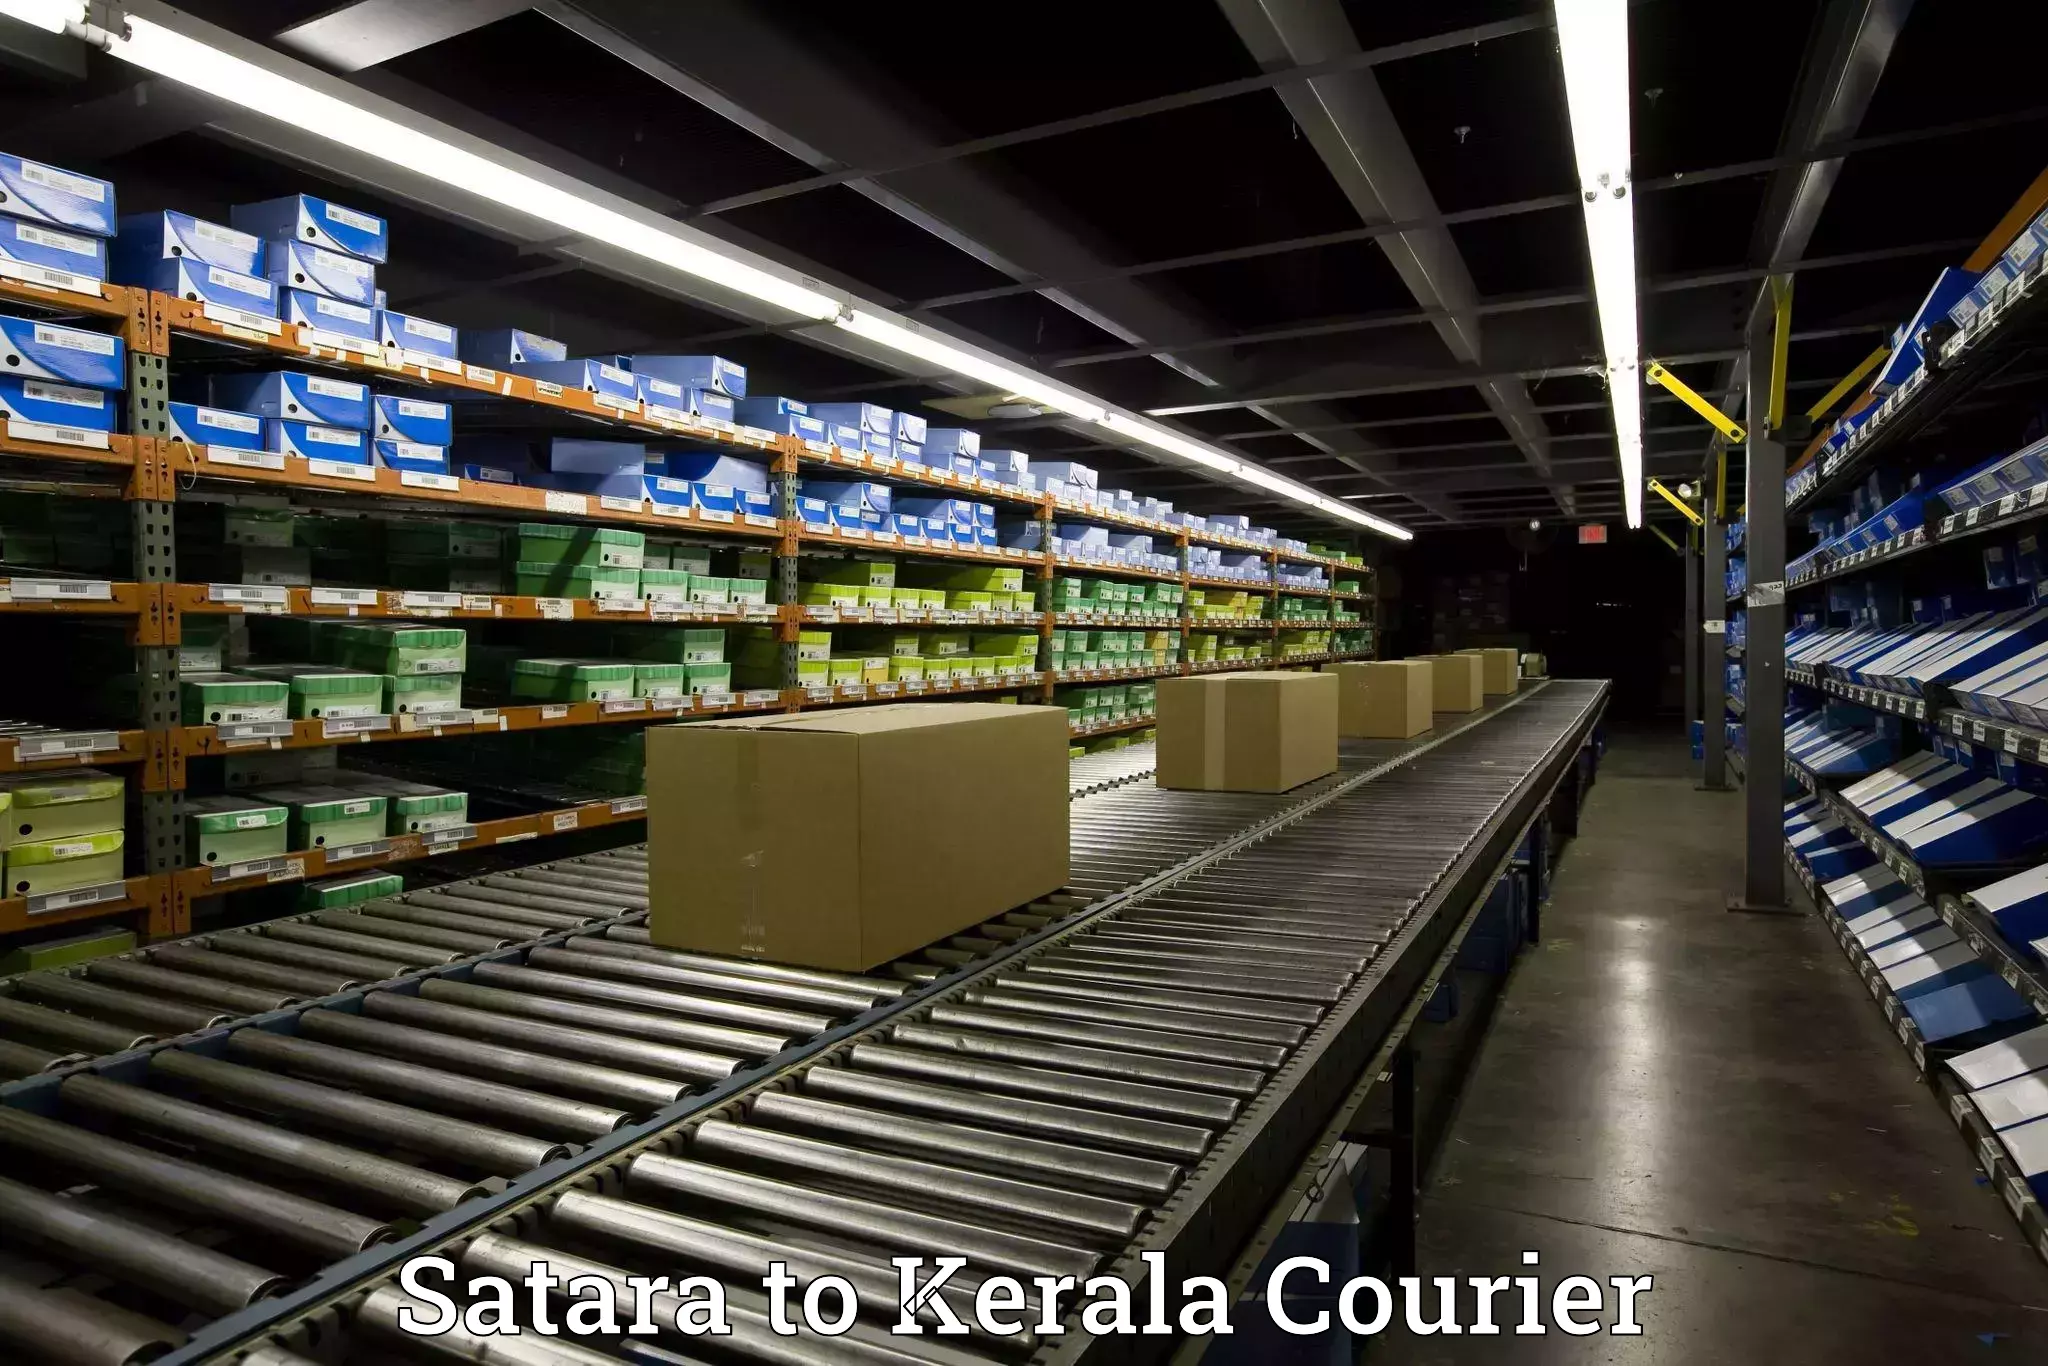 Quality moving company Satara to Kerala